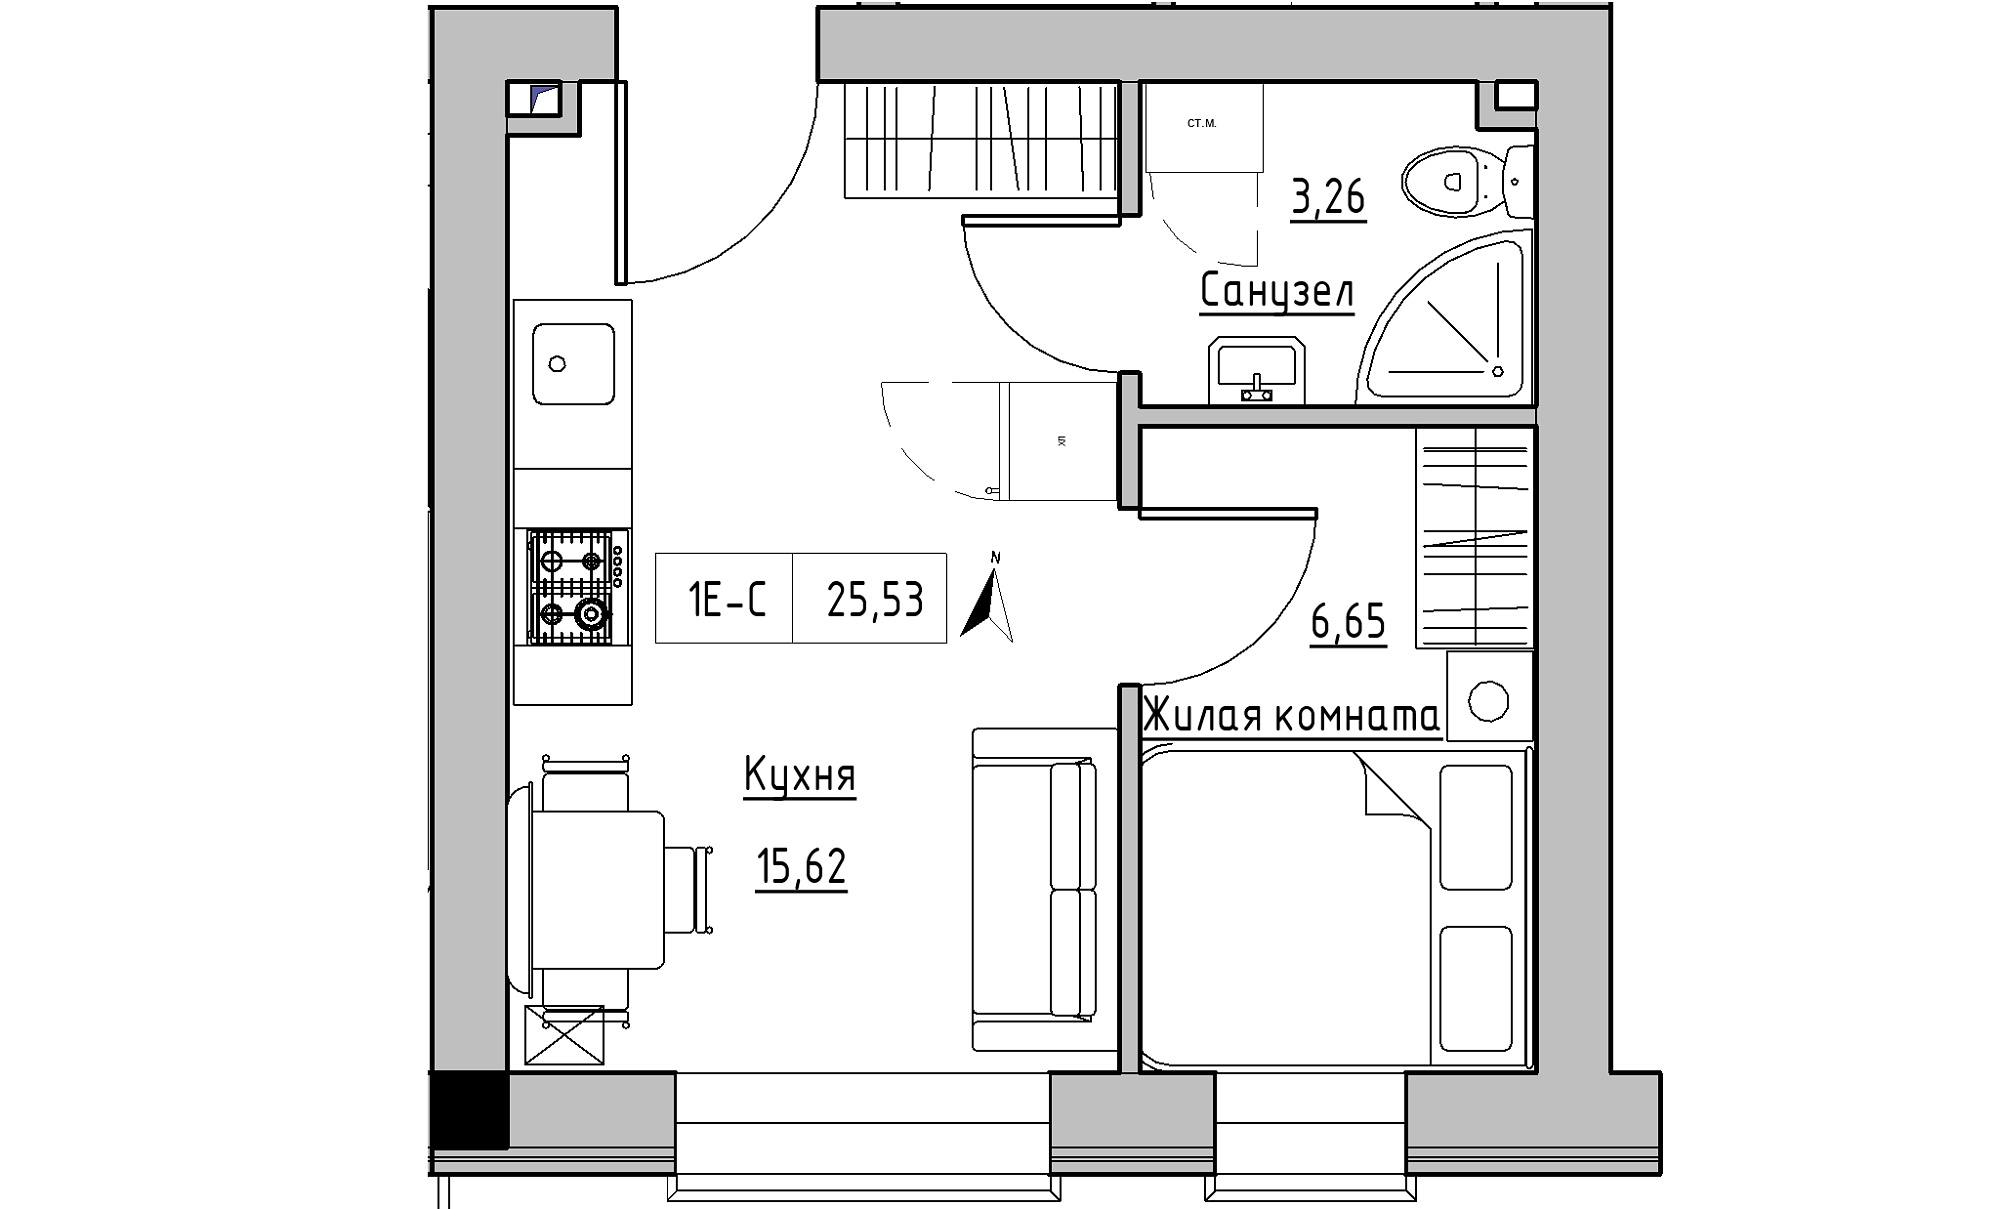 Планировка 1-к квартира площей 25.53м2, KS-016-05/0004.